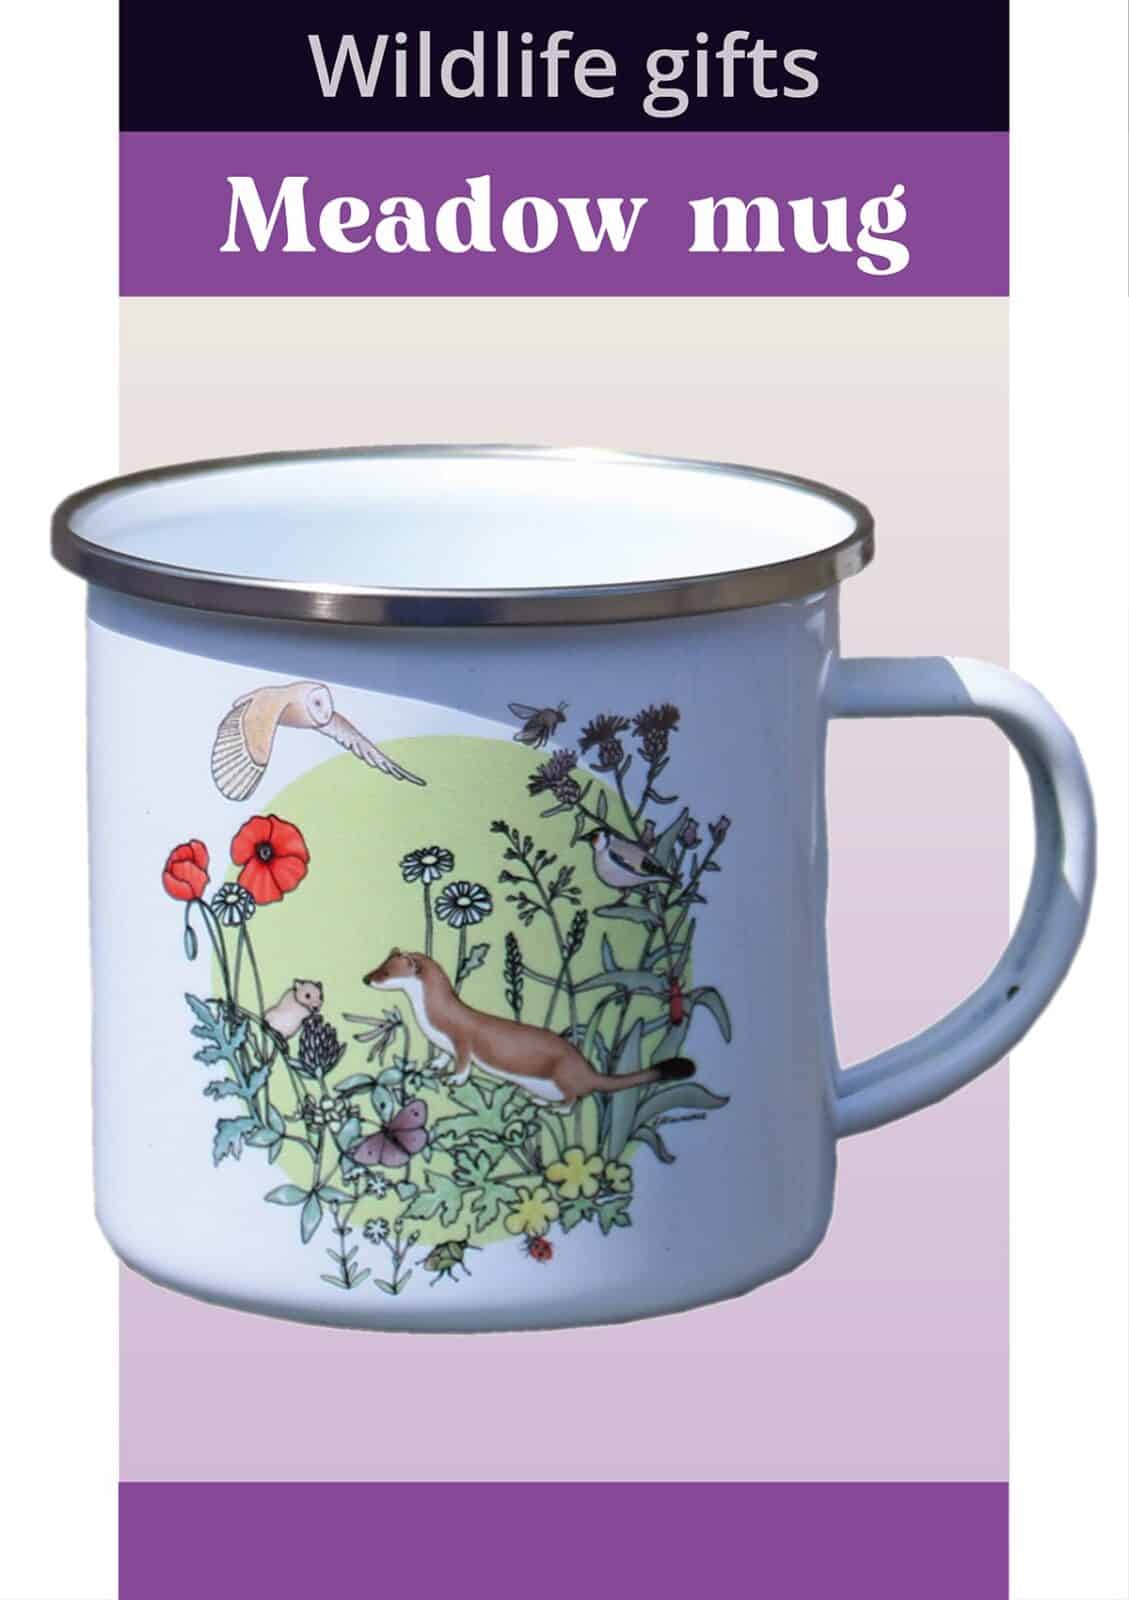 nature mug meadow wildlife